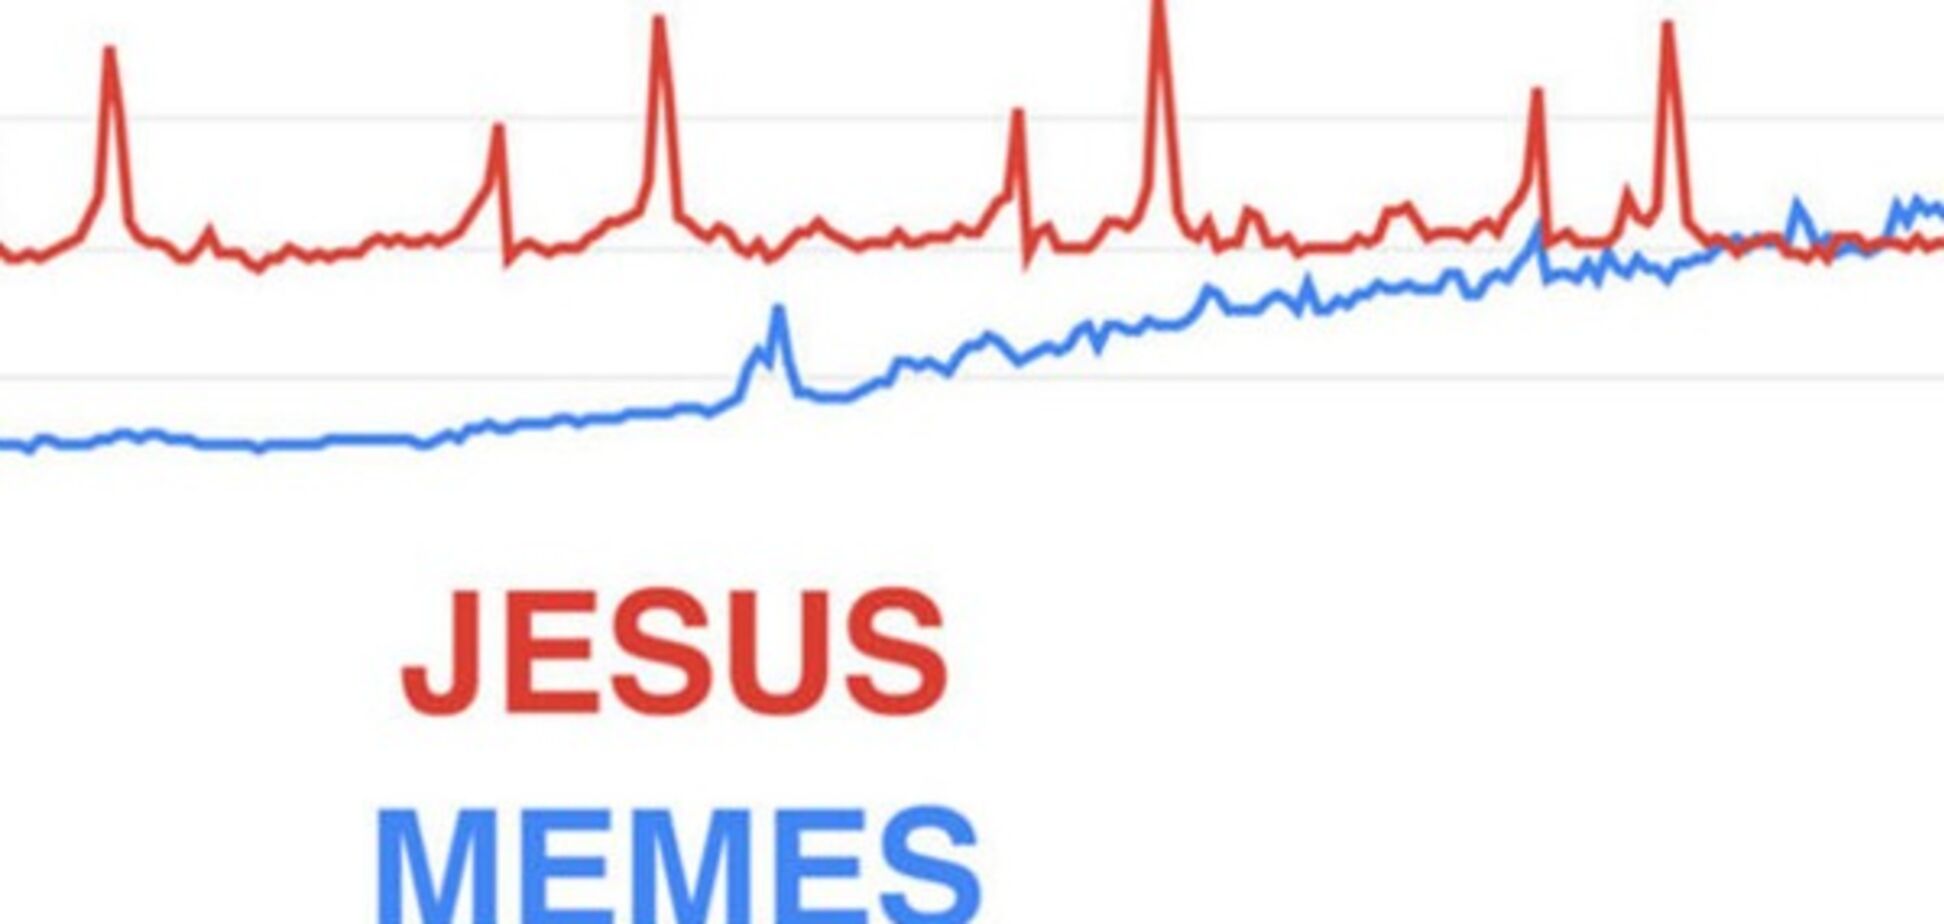 Динамика поисковых запросов memes и Jesus в Google Trends